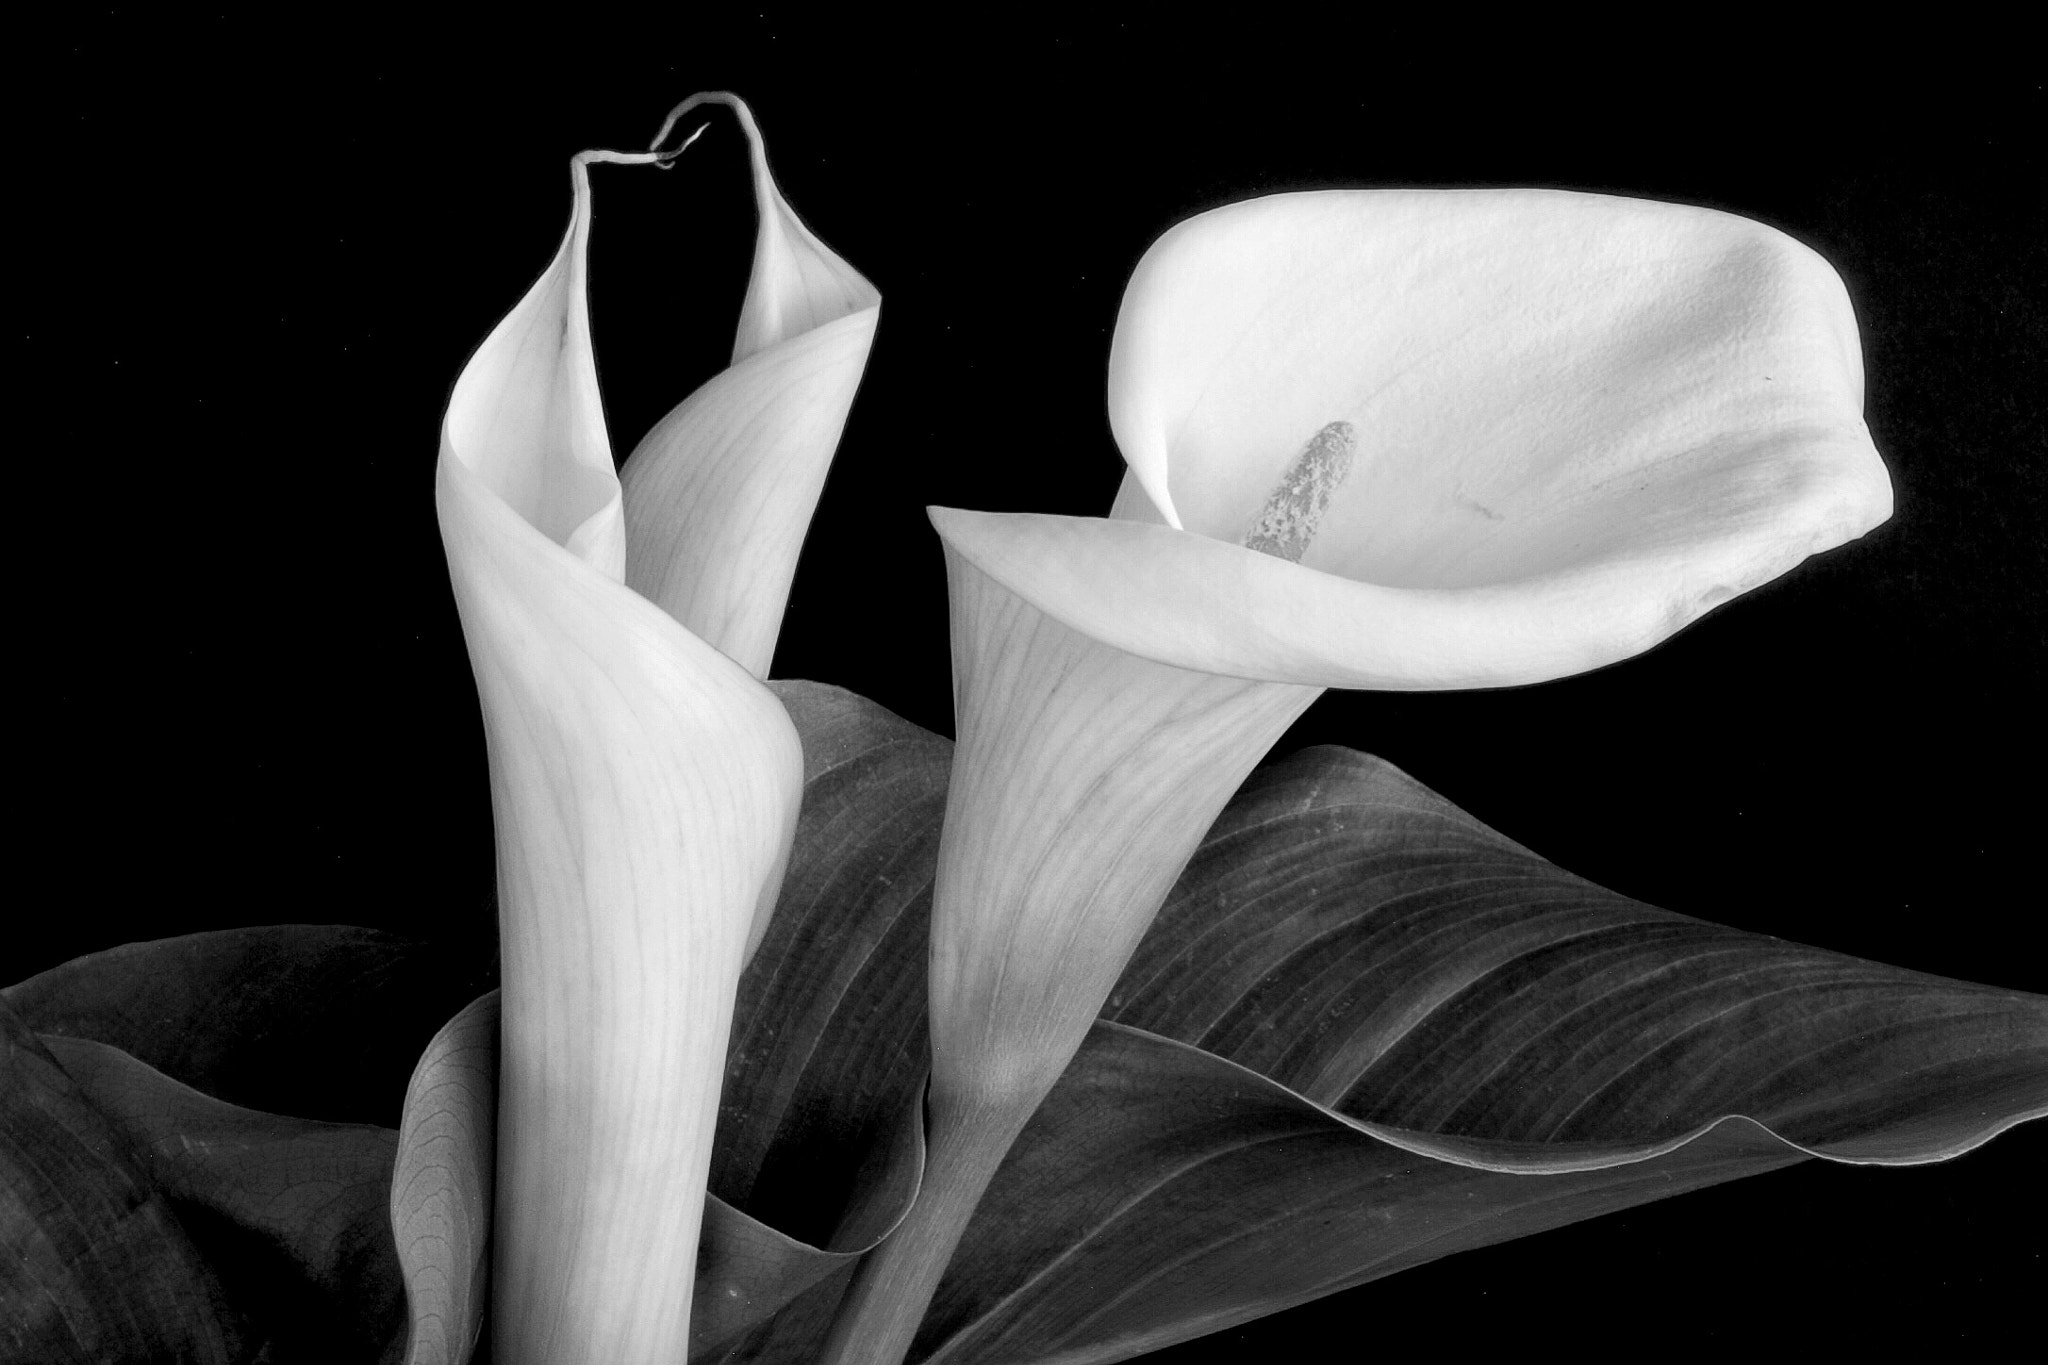 Canon EOS 60D sample photo. Calla lilies closeup bnw photography